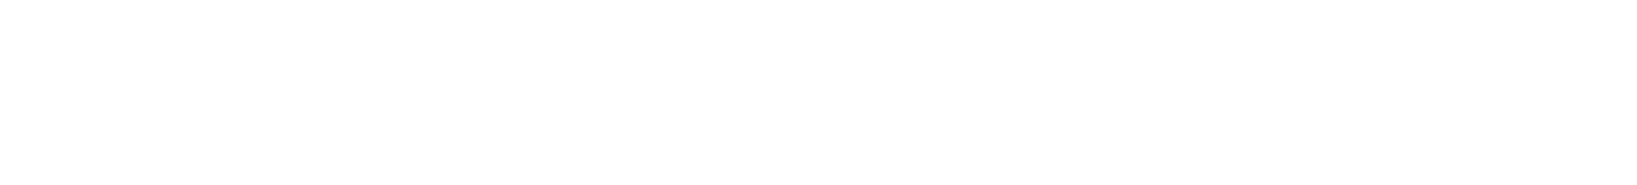 Nucor
 logo grand pour les fonds sombres (PNG transparent)